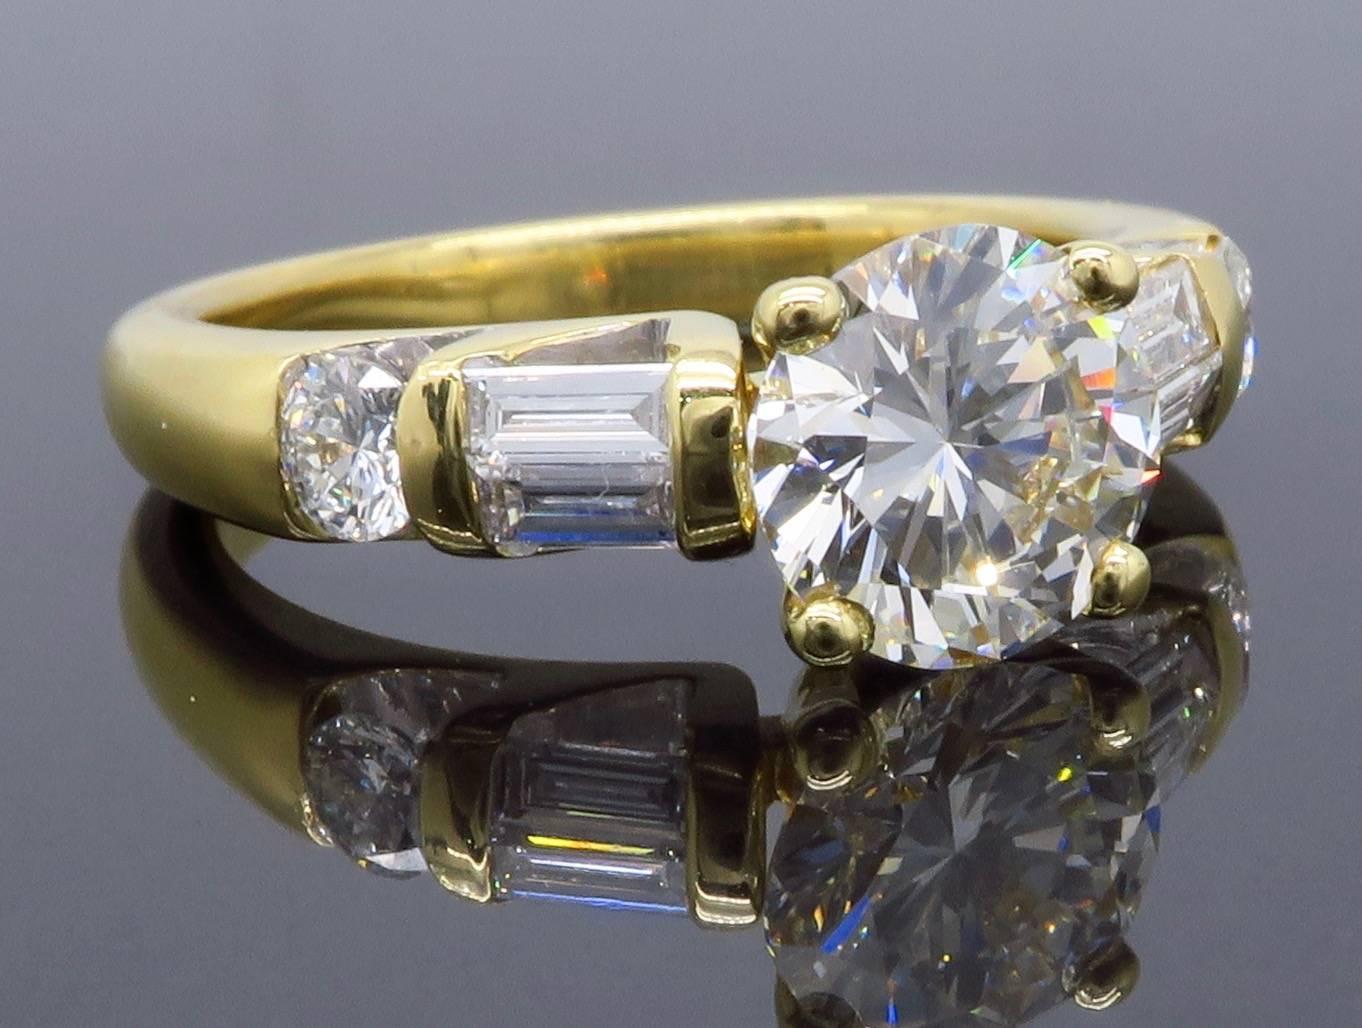 GIA Certified 1.66 Carat Diamond Engagement Ring in 18 Karat Yellow Gold 2